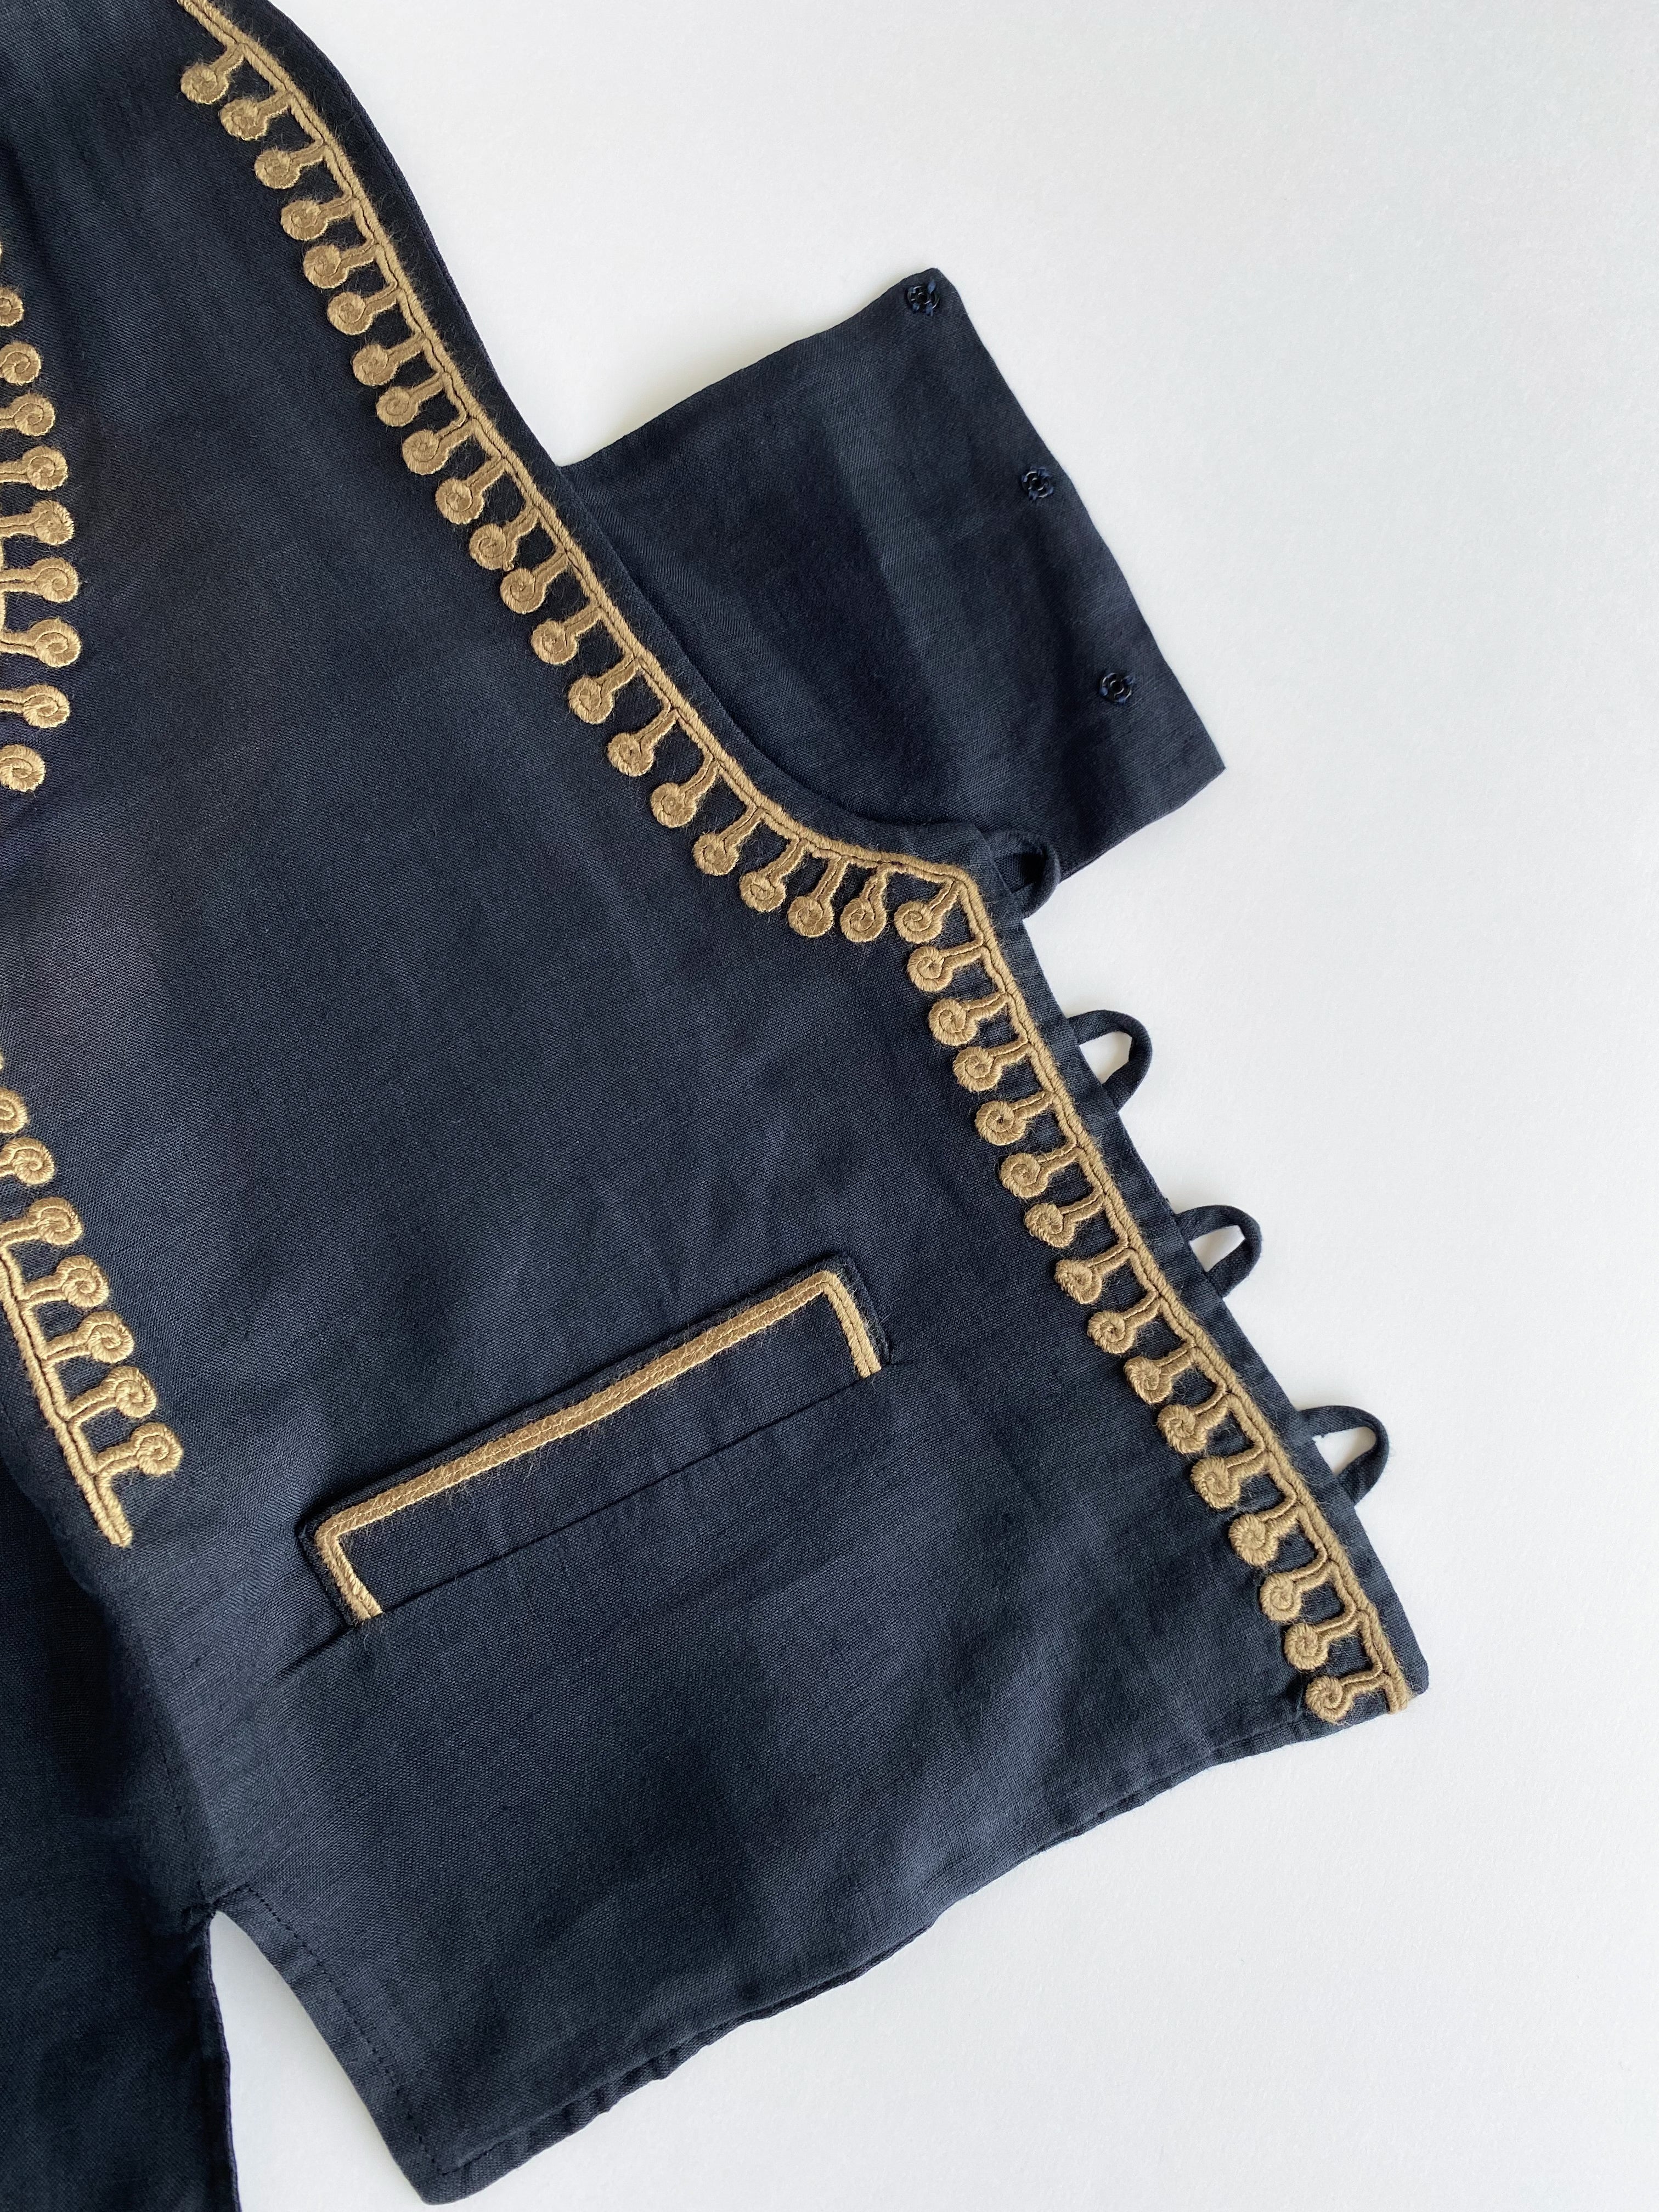 80's Emporio Armani embroidered vest